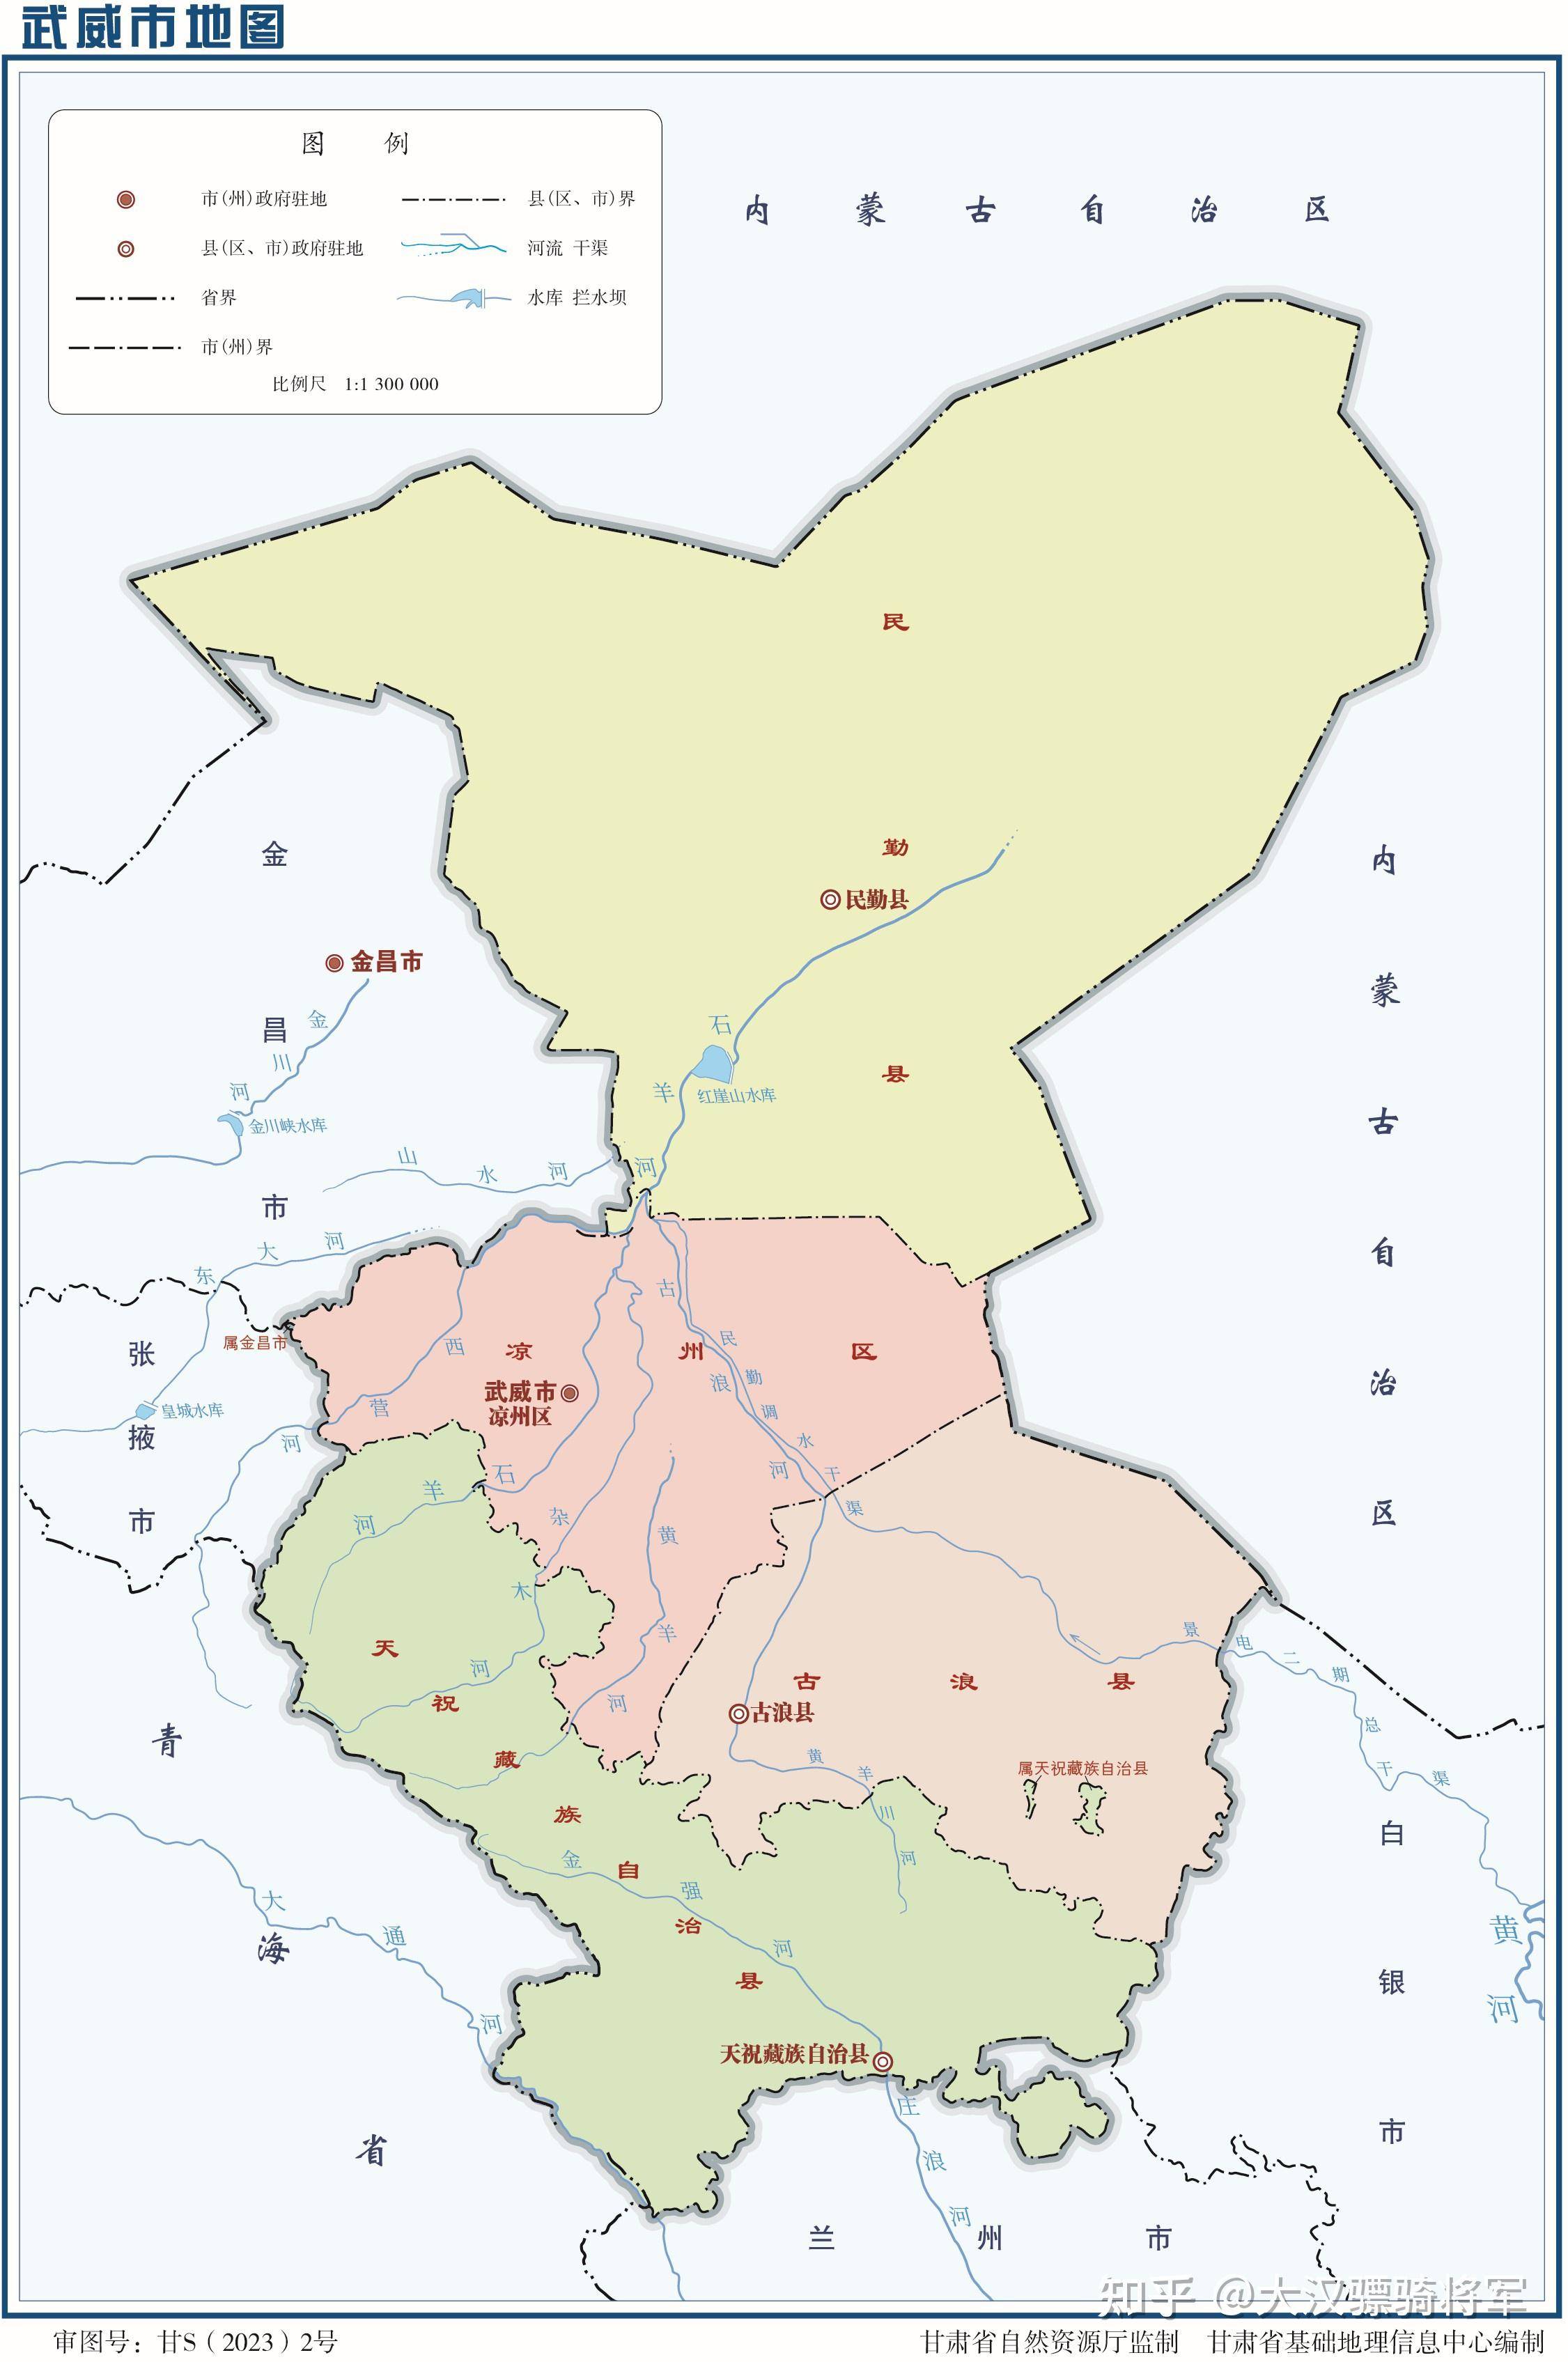 目前,武威市下辖凉州区1个市辖区,民勤县,古浪县2个县,1个天祝藏族